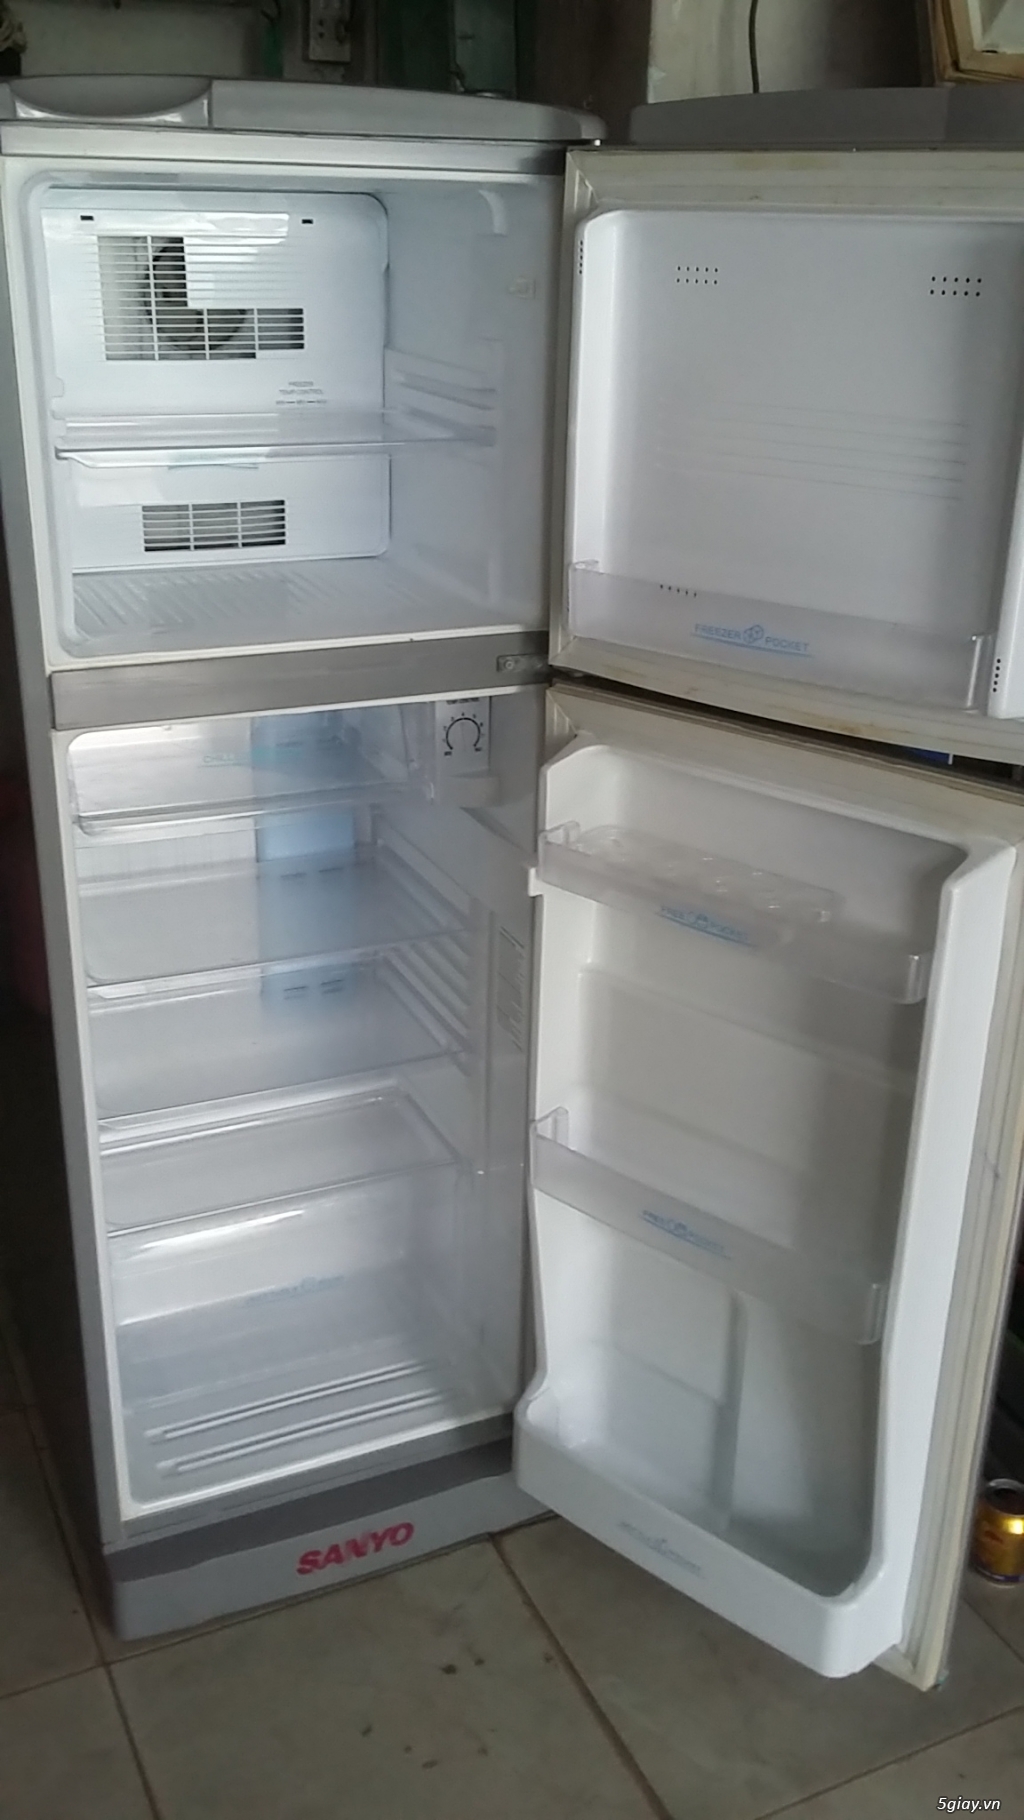 Bán tủ lạnh cũ giá cực rẻ.uy tín,bảo hành dài hạn...đủ các loại - 15